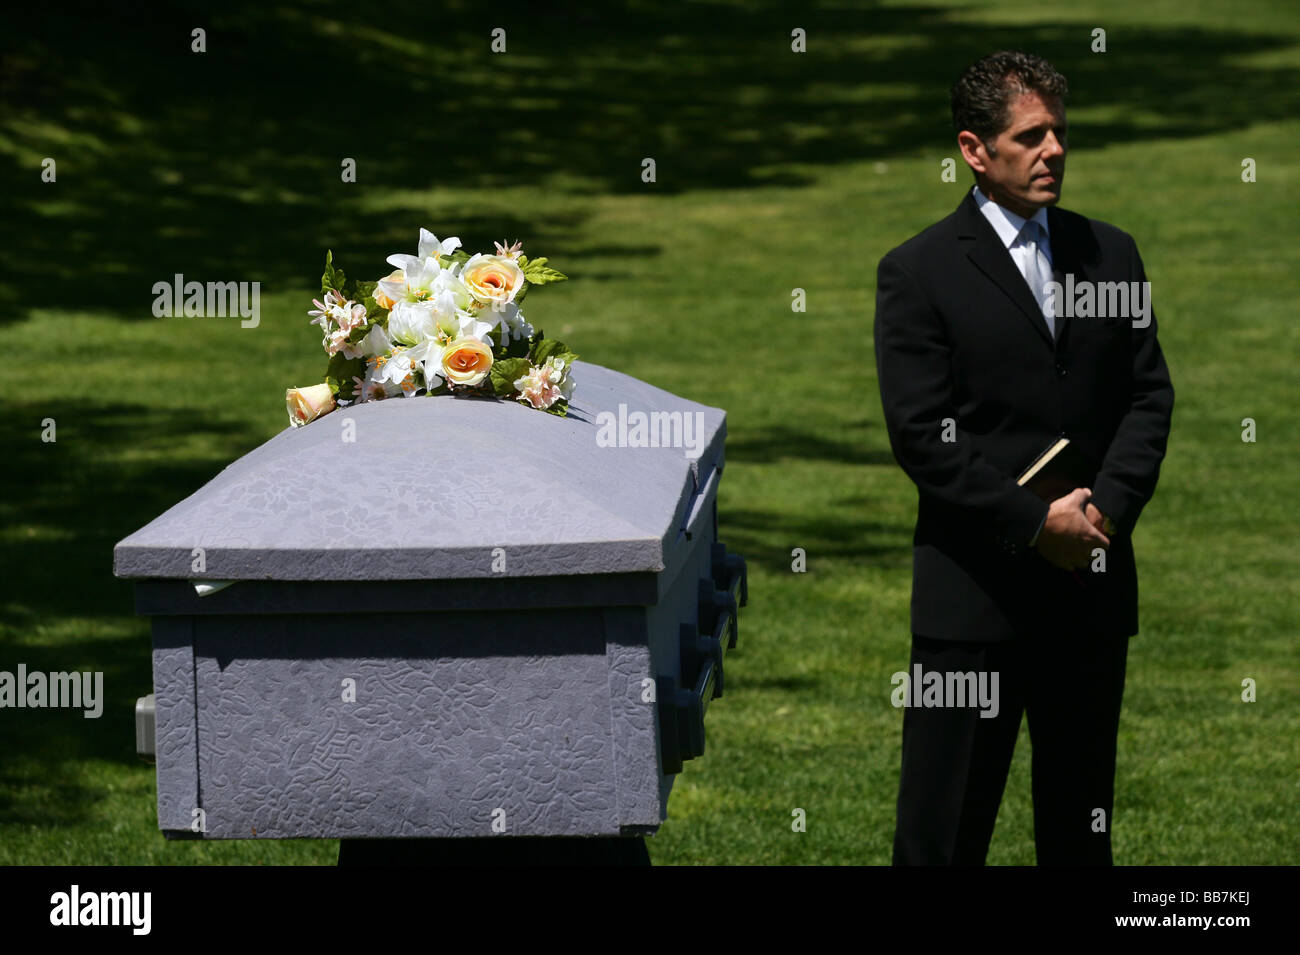 Les enseignants d'un procède à un simulacre de funérailles dans une école secondaire d'enseigner aux adolescents les dangers de l'alcool au volant. CT USA Banque D'Images